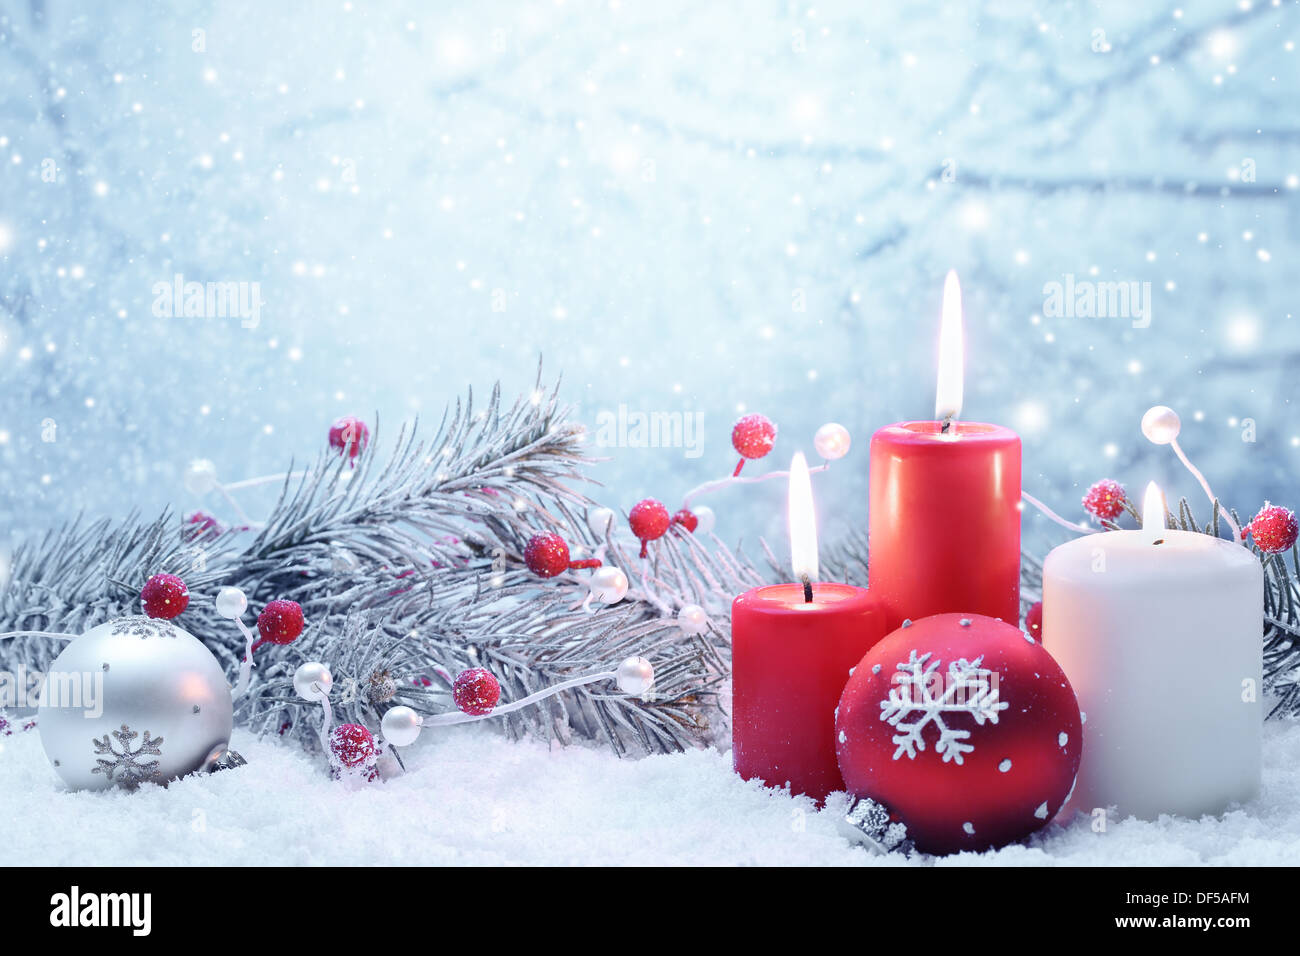 Weihnachts-Dekoration mit Kerzen, Tanne Zweig und Kugeln auf Schnee. Stockfoto